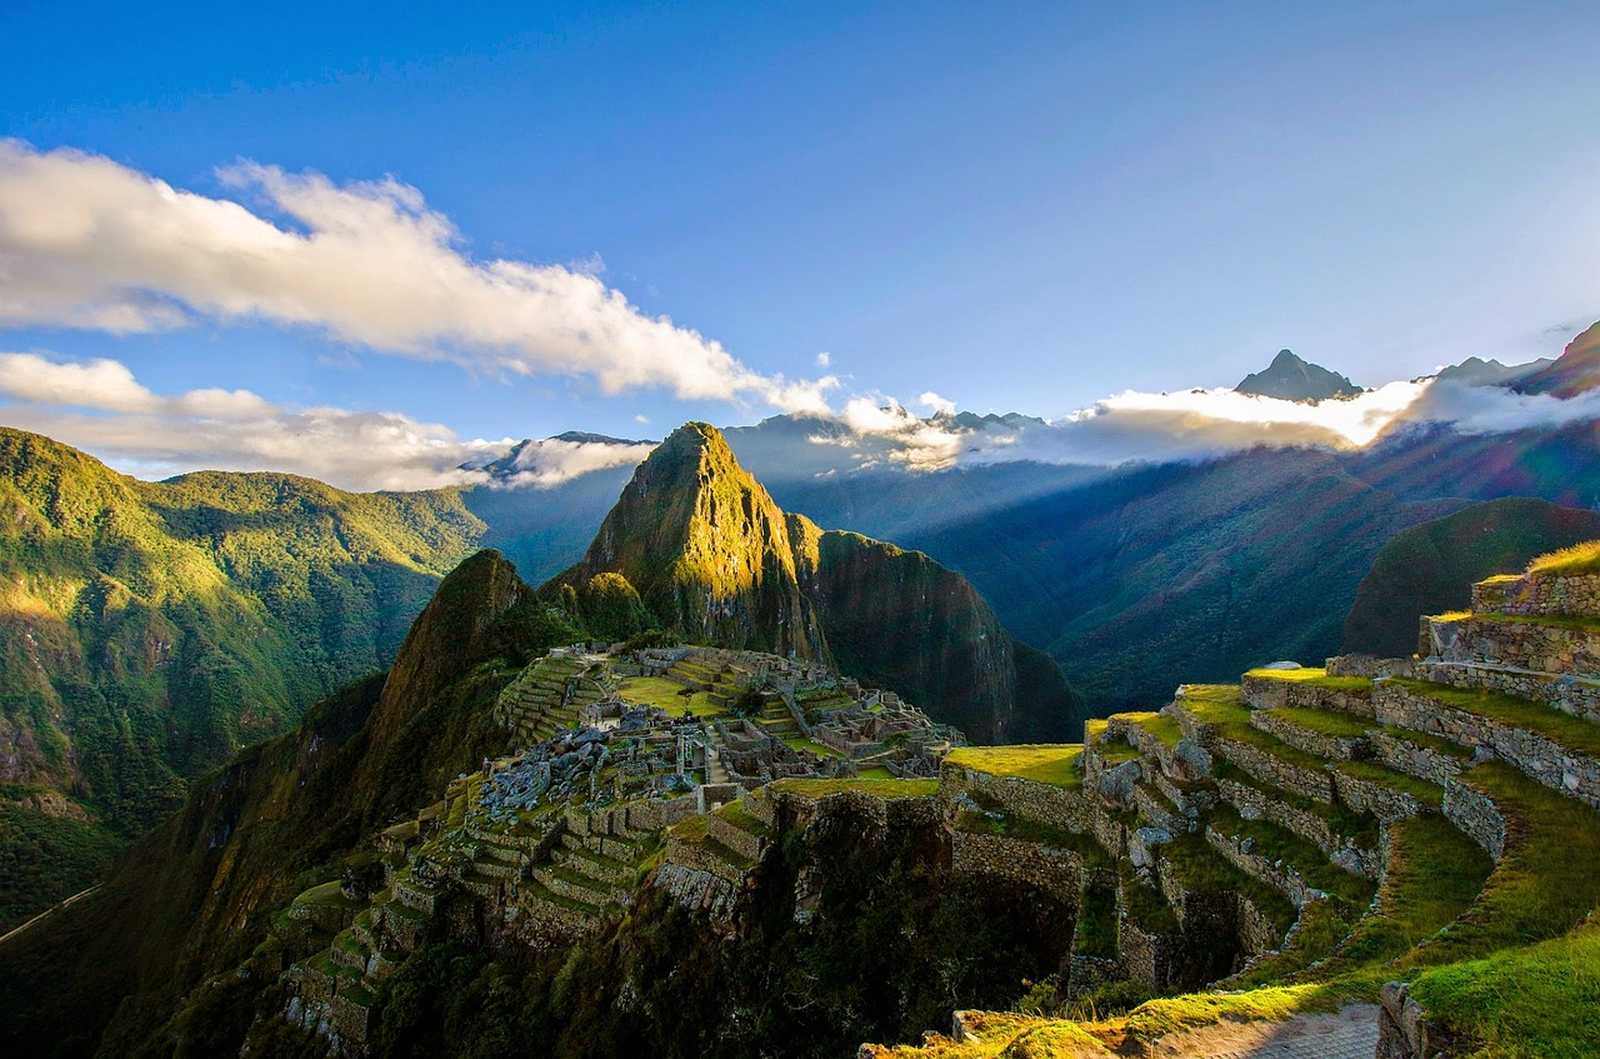 Image Le Pérou du nord au sud